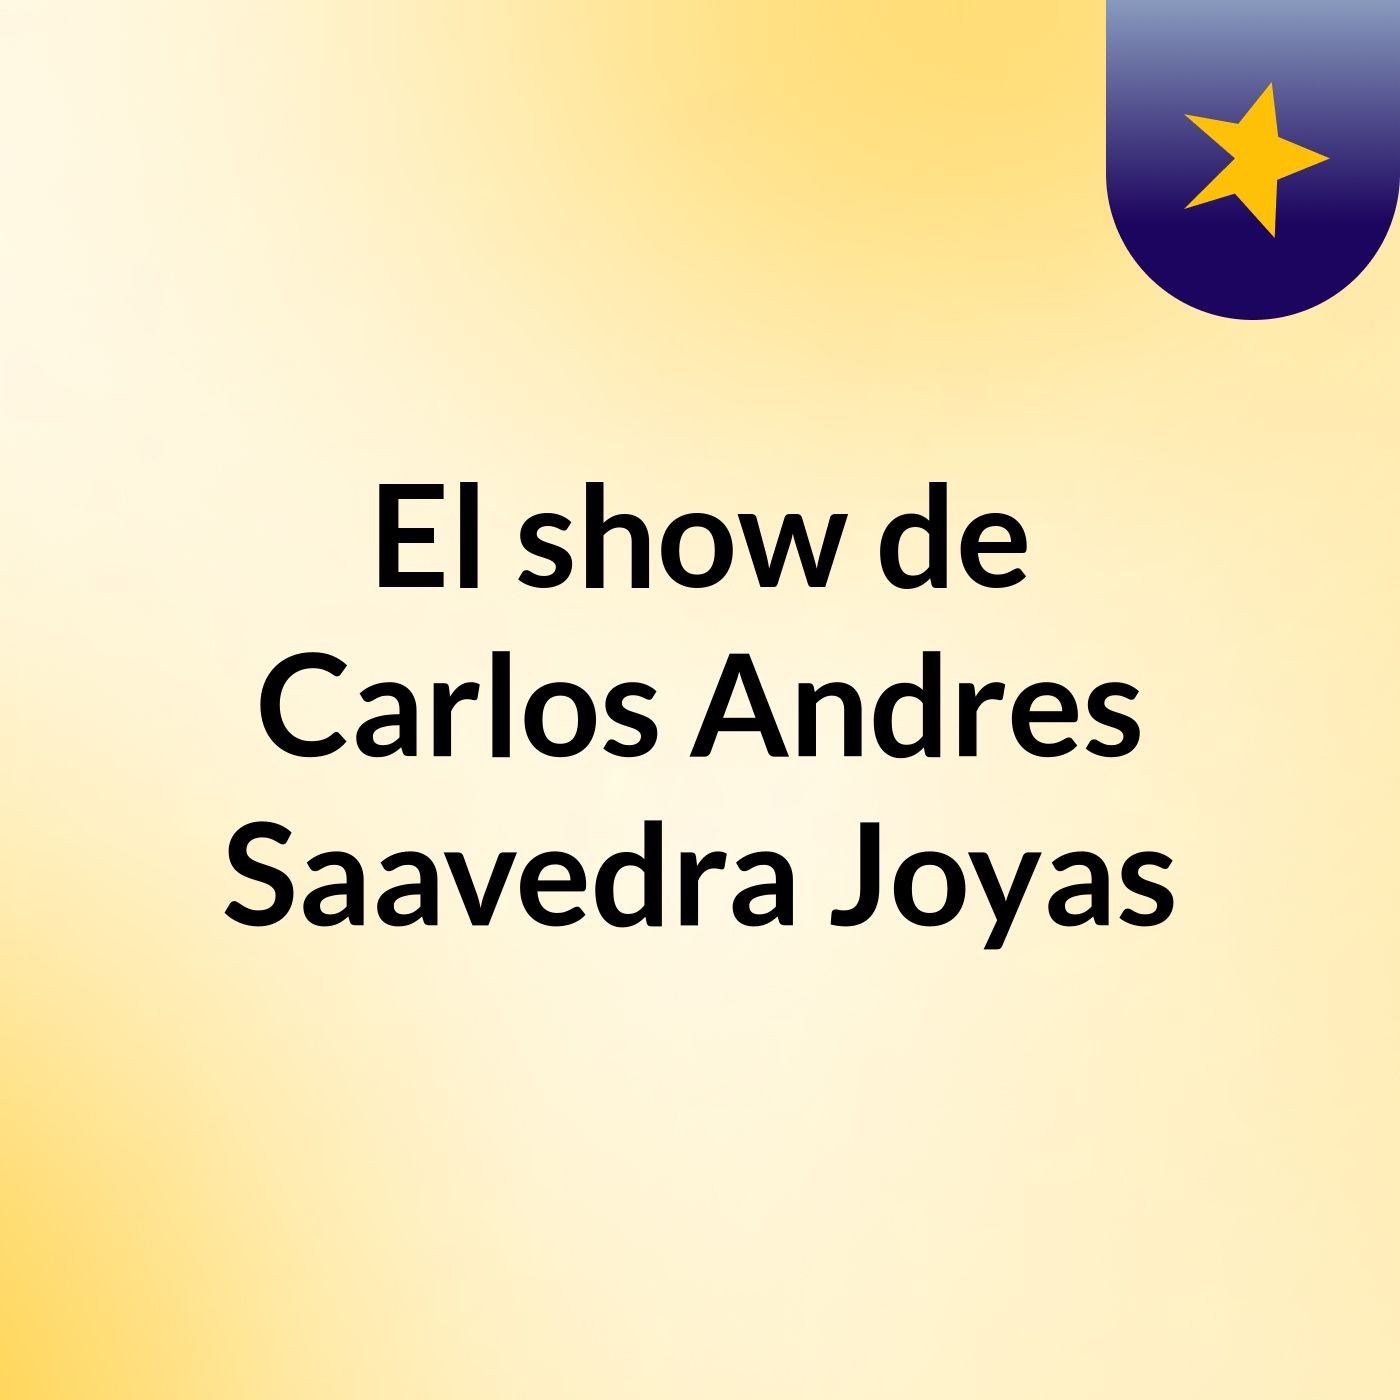 El show de Carlos Andres Saavedra Joyas